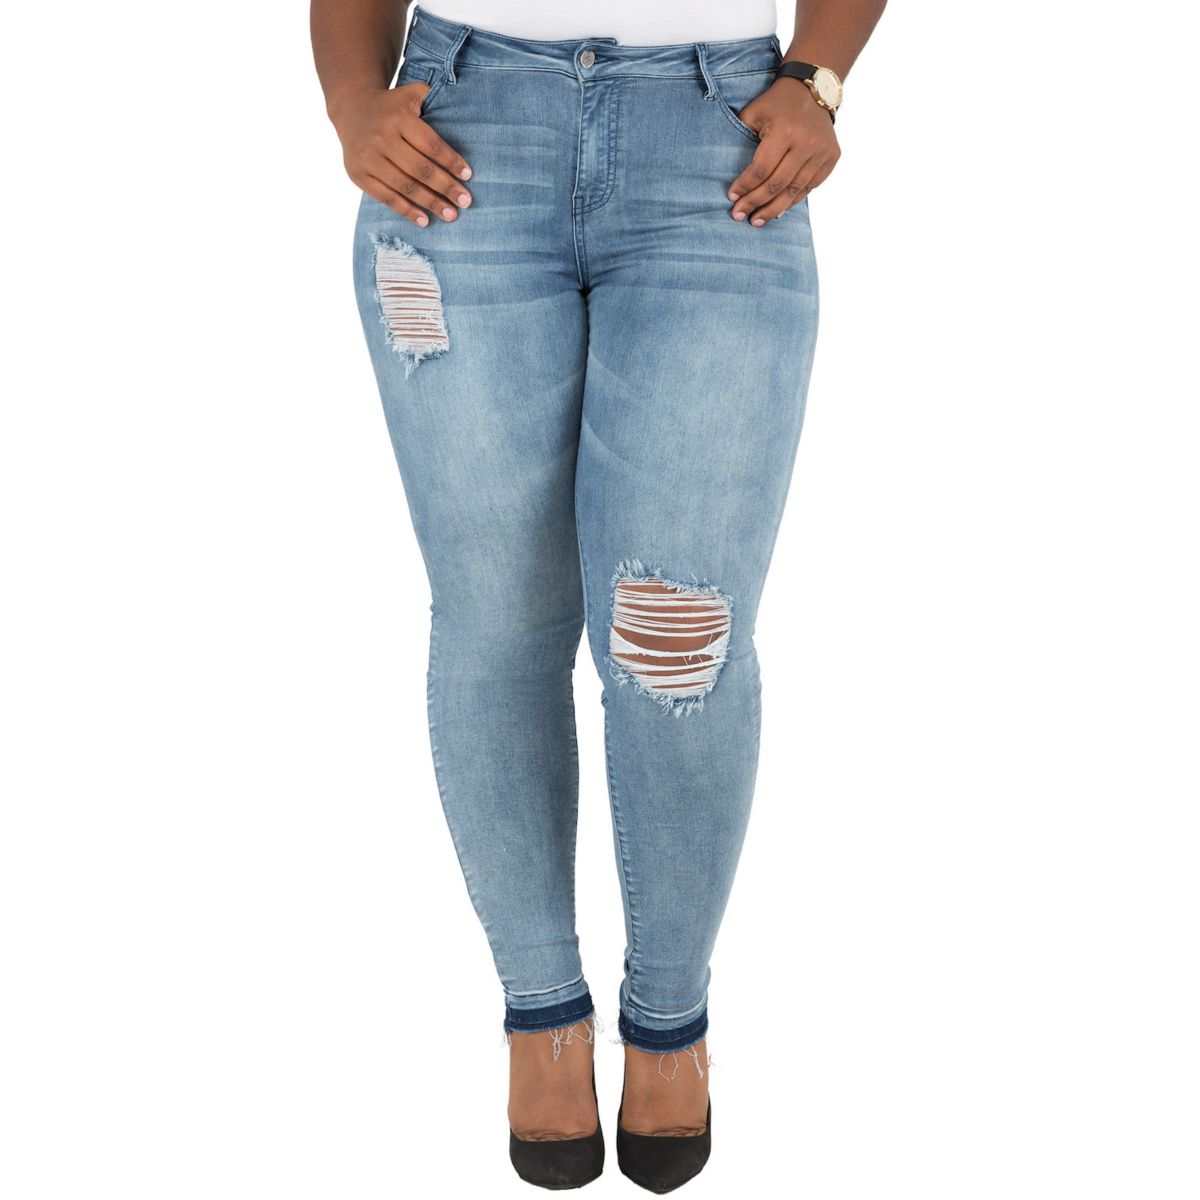 Женские джинсы больших размеров с пышной посадкой Corrine с потрепанным краем Poetic Justice